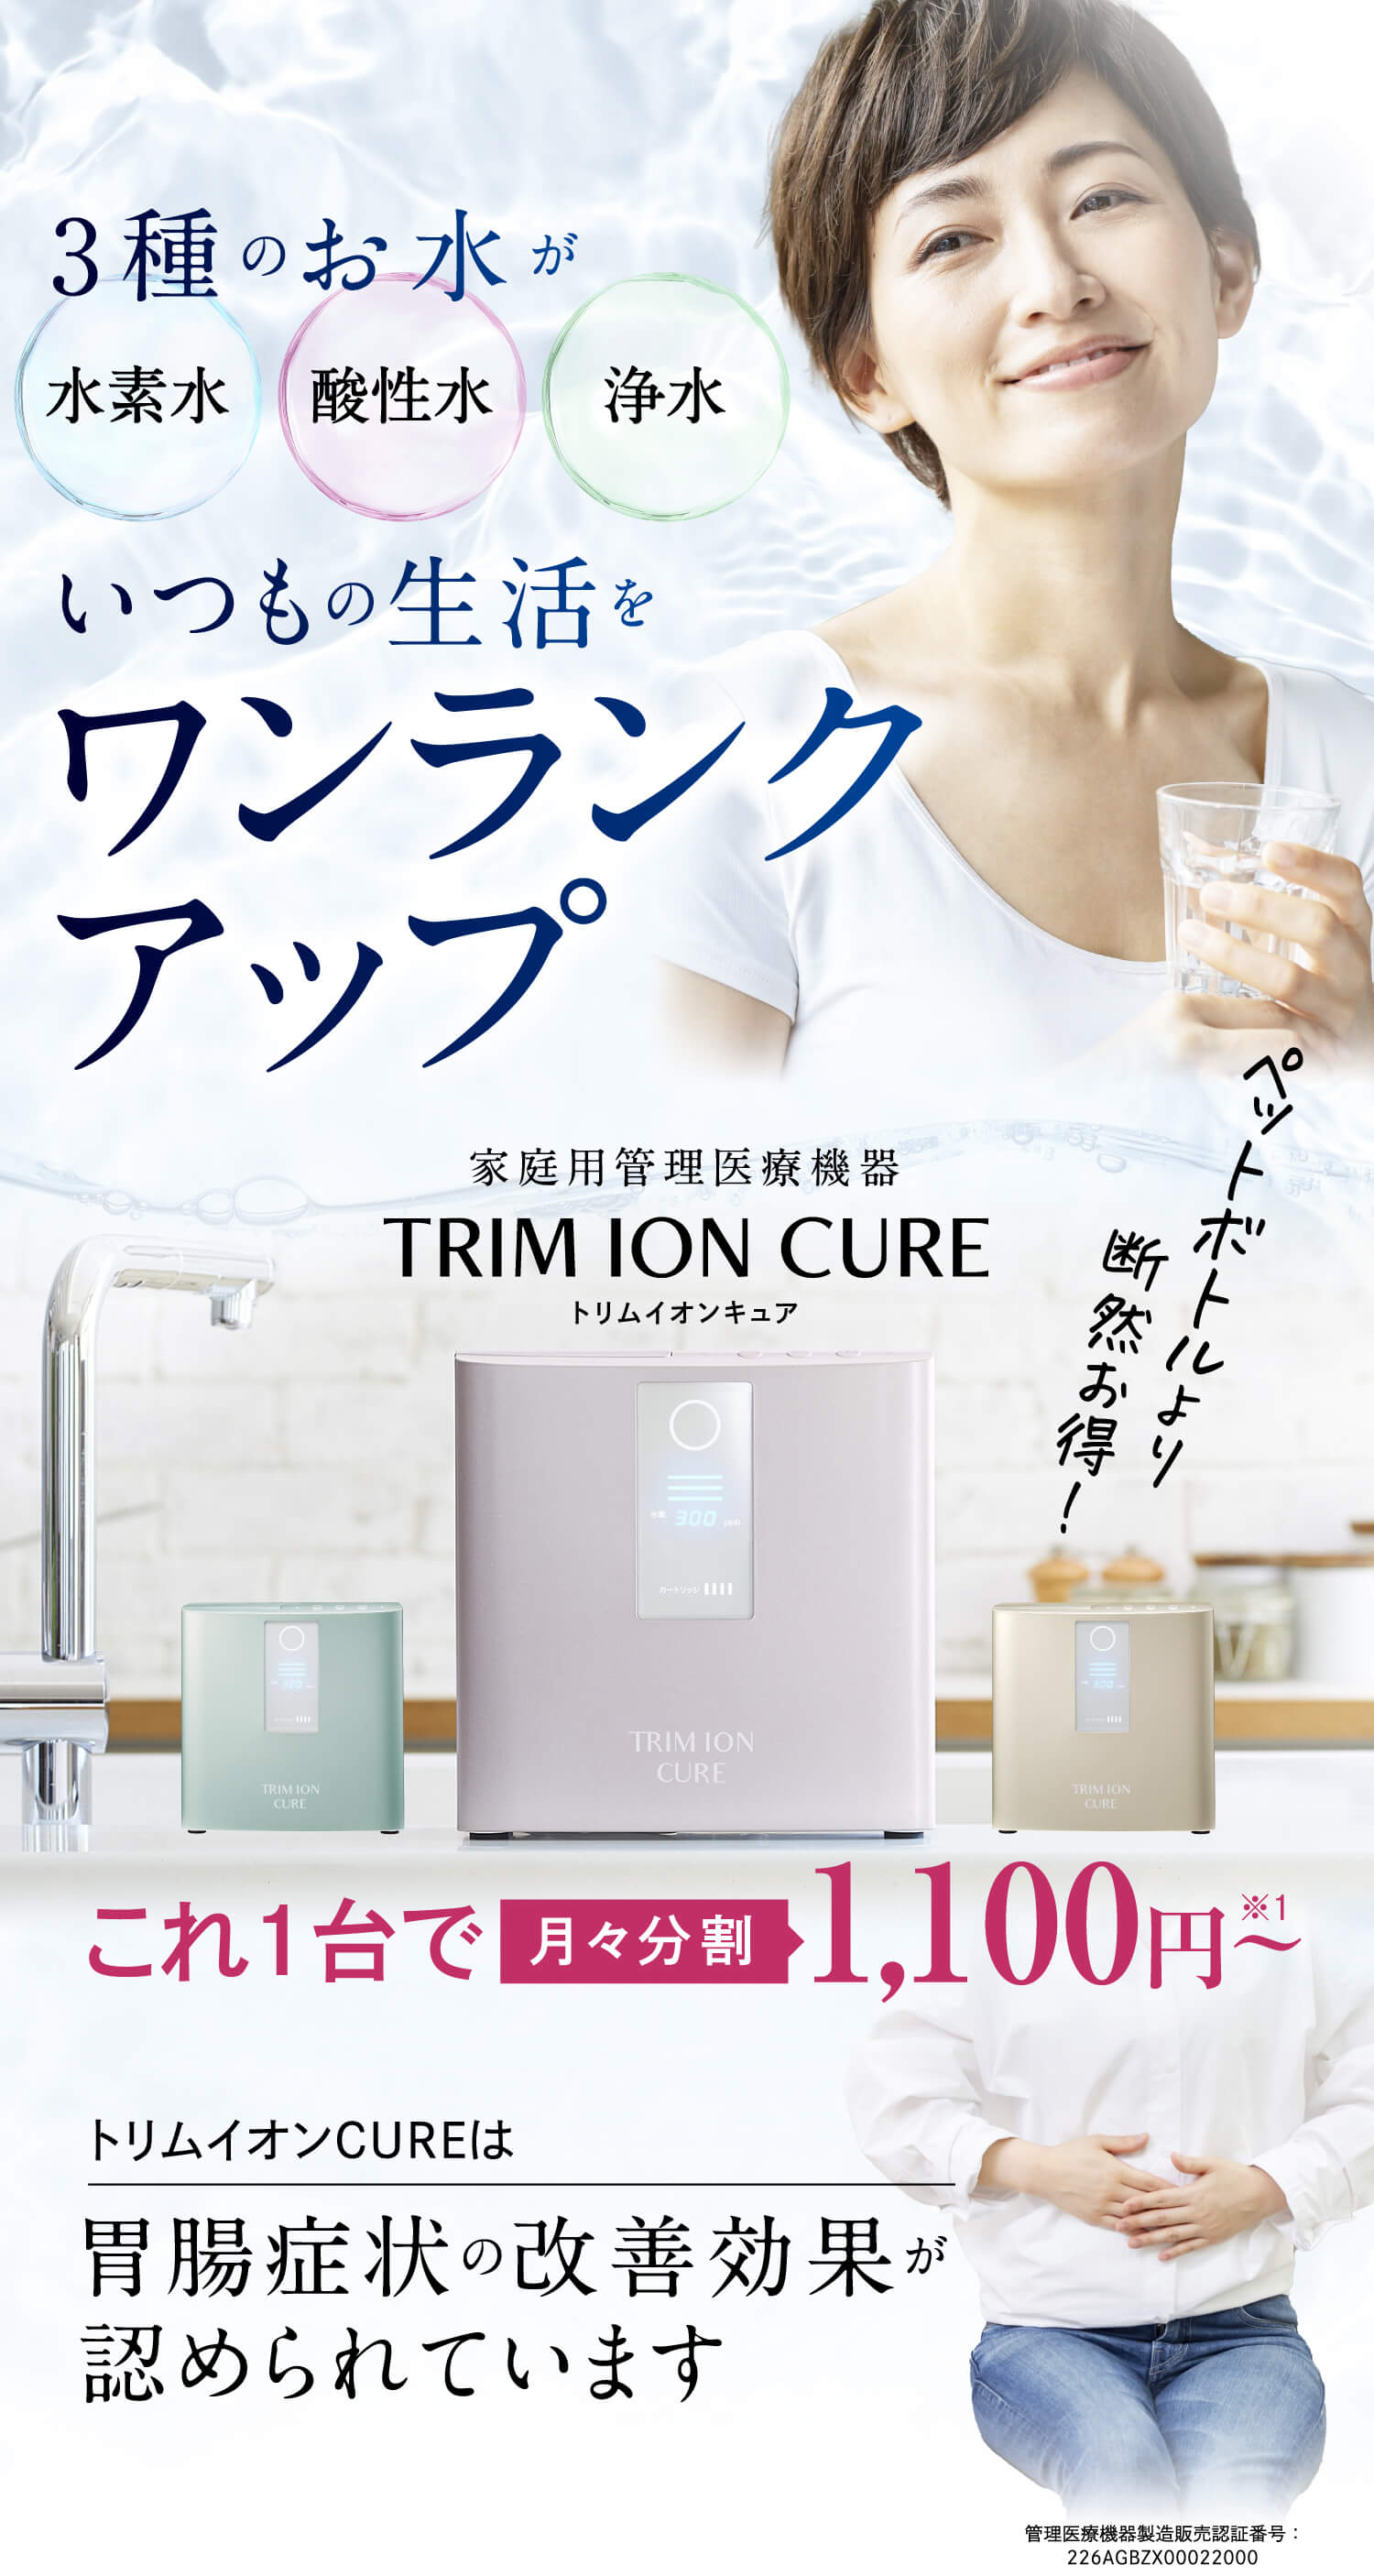 日本トリム 整水器シェアNo.1 | TRIM ION CURE